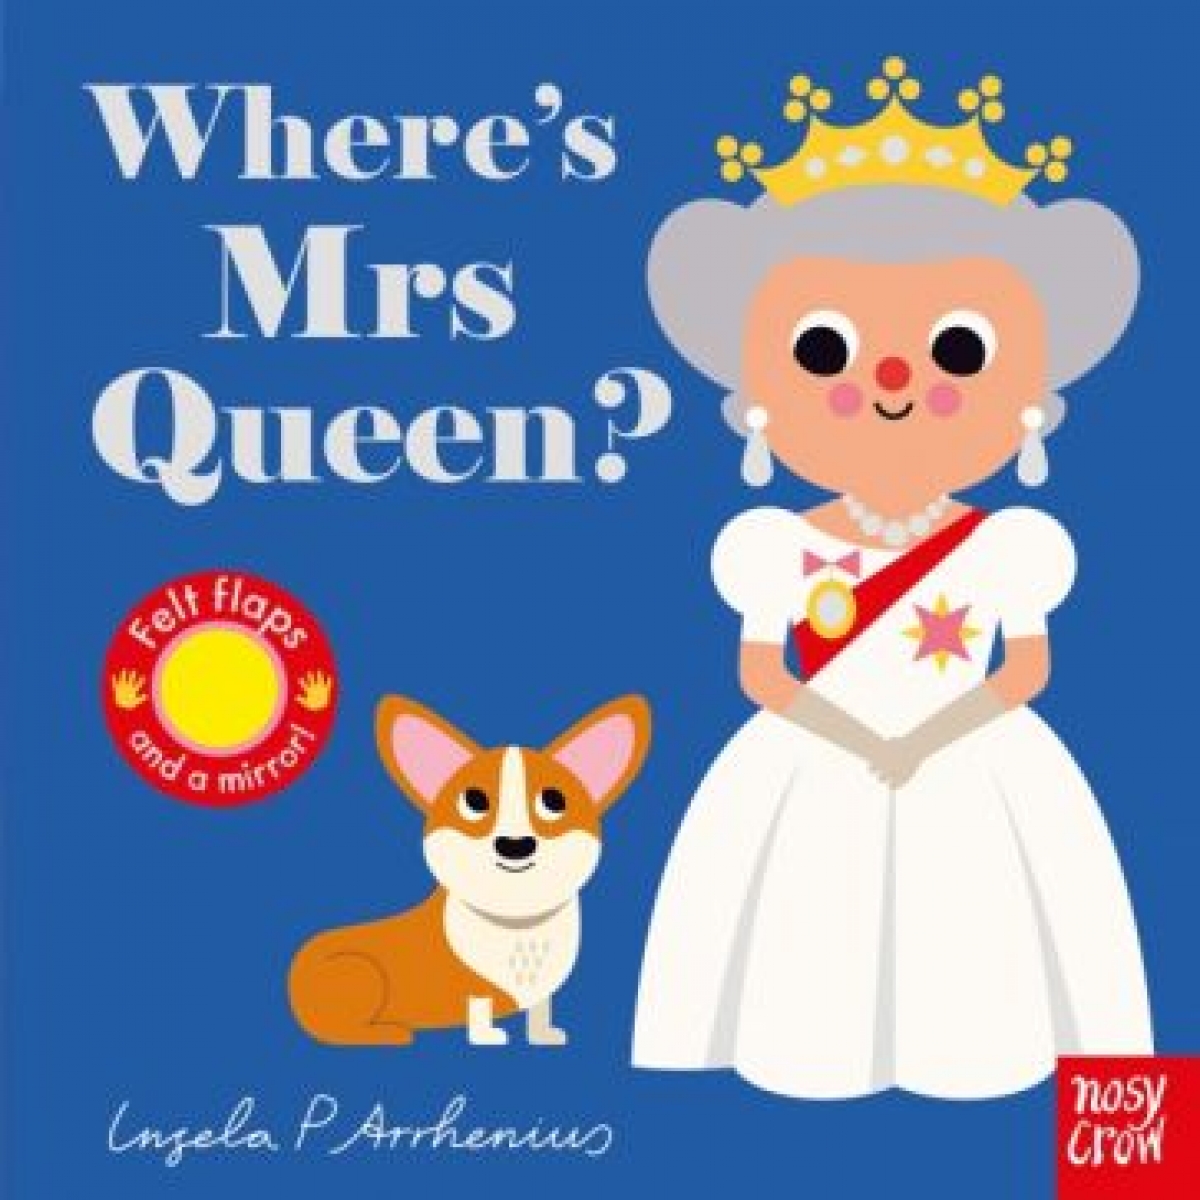 Arrhenius Ingela P. Wheres Mrs Queen? 